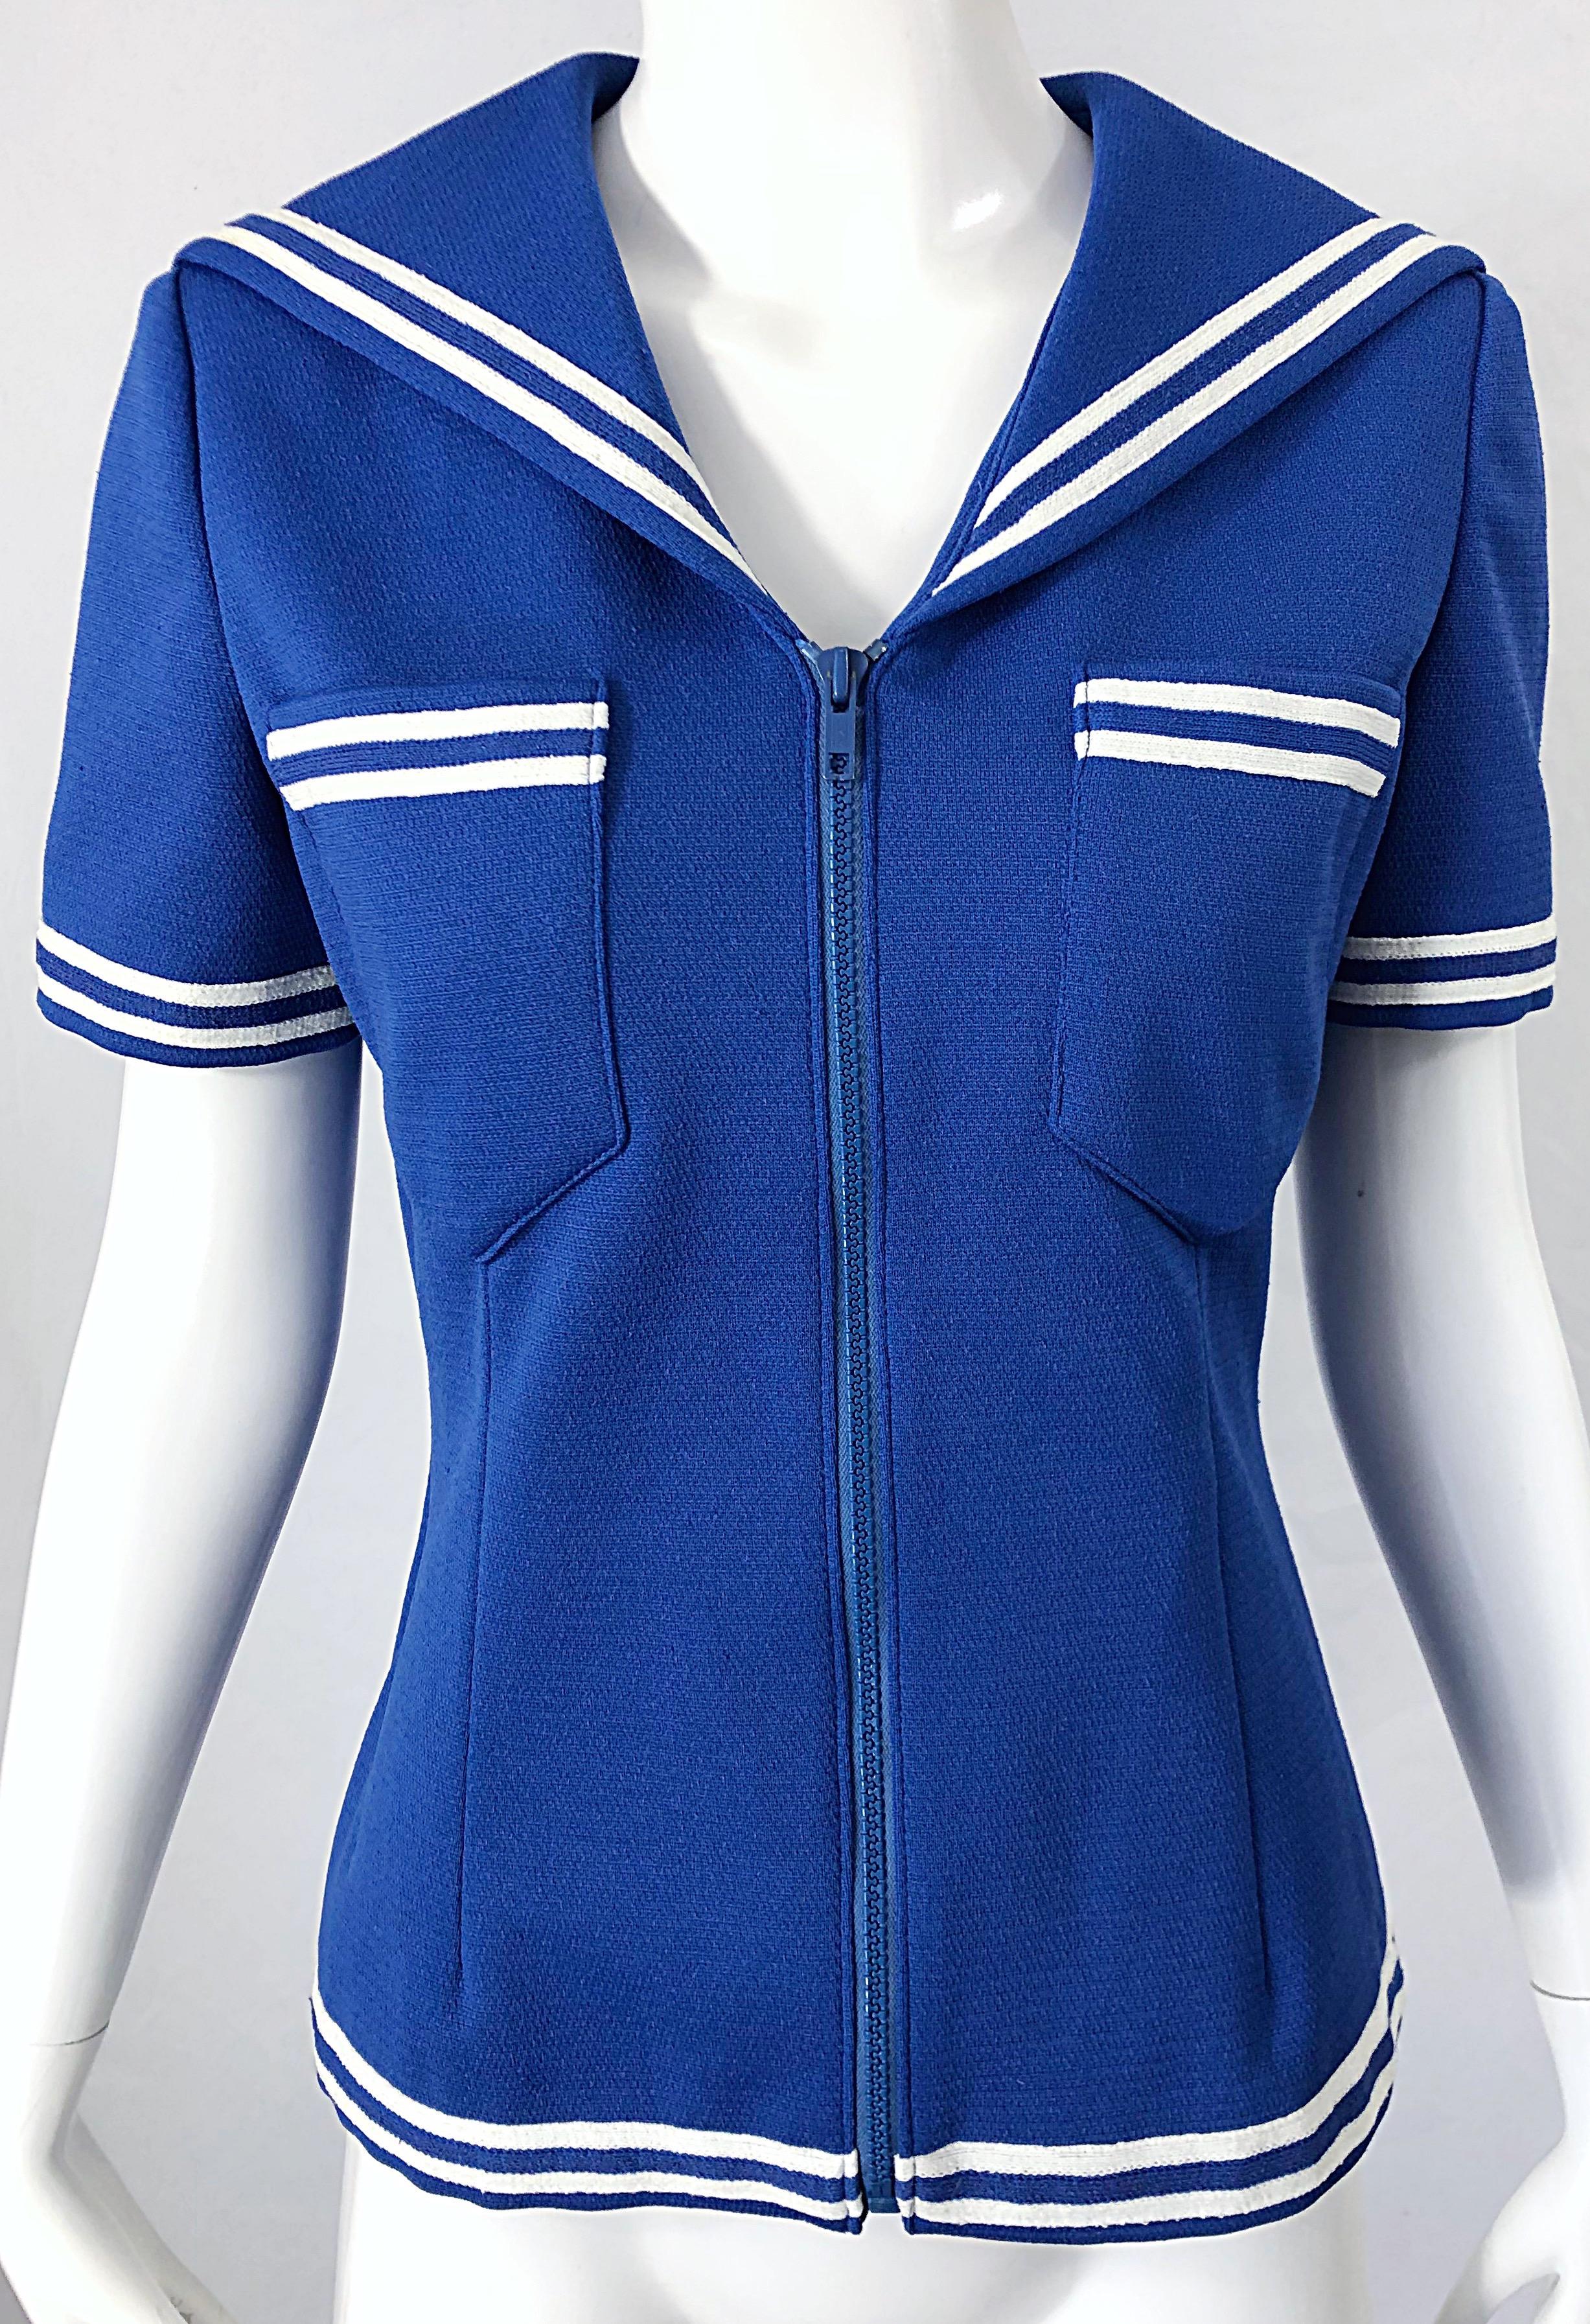 Women's 1970s Nautical Blue + White Nautical Vintage Sailor Knit 70s Shirt Top Blouse